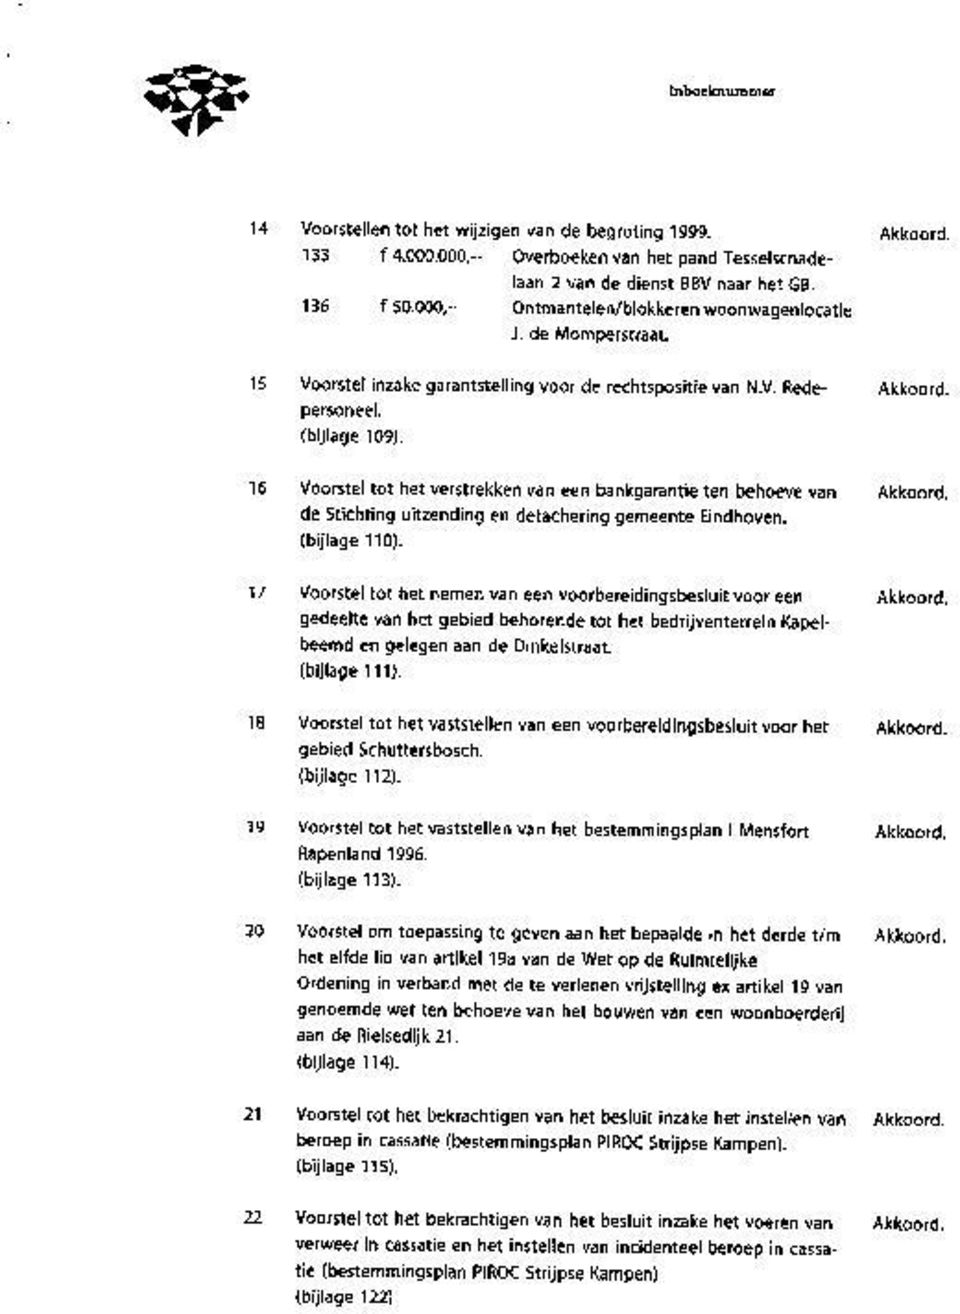 16 Voorstel tot het verstrekken van een bankgarantie ten behoeve van de Stichting uitzending en detachering gemeente Eindhoven. (bijlage 110).